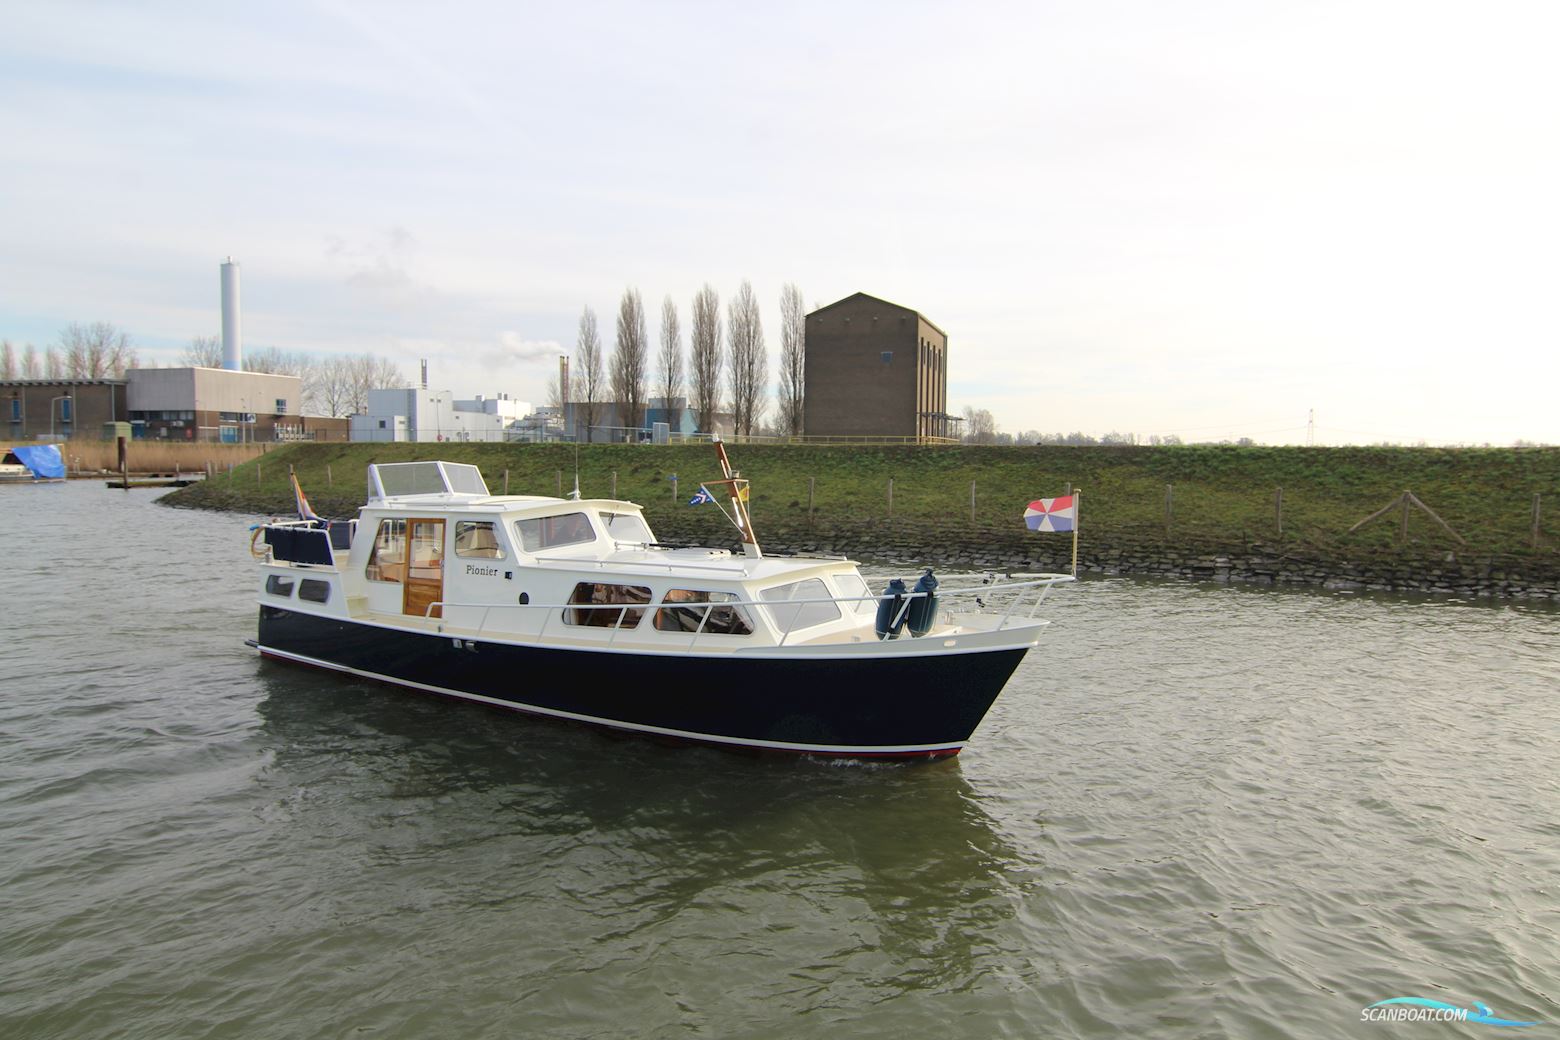 Rijokruiser 1100 Gsak Motor boat 1978, with Mitsubishi engine, The Netherlands